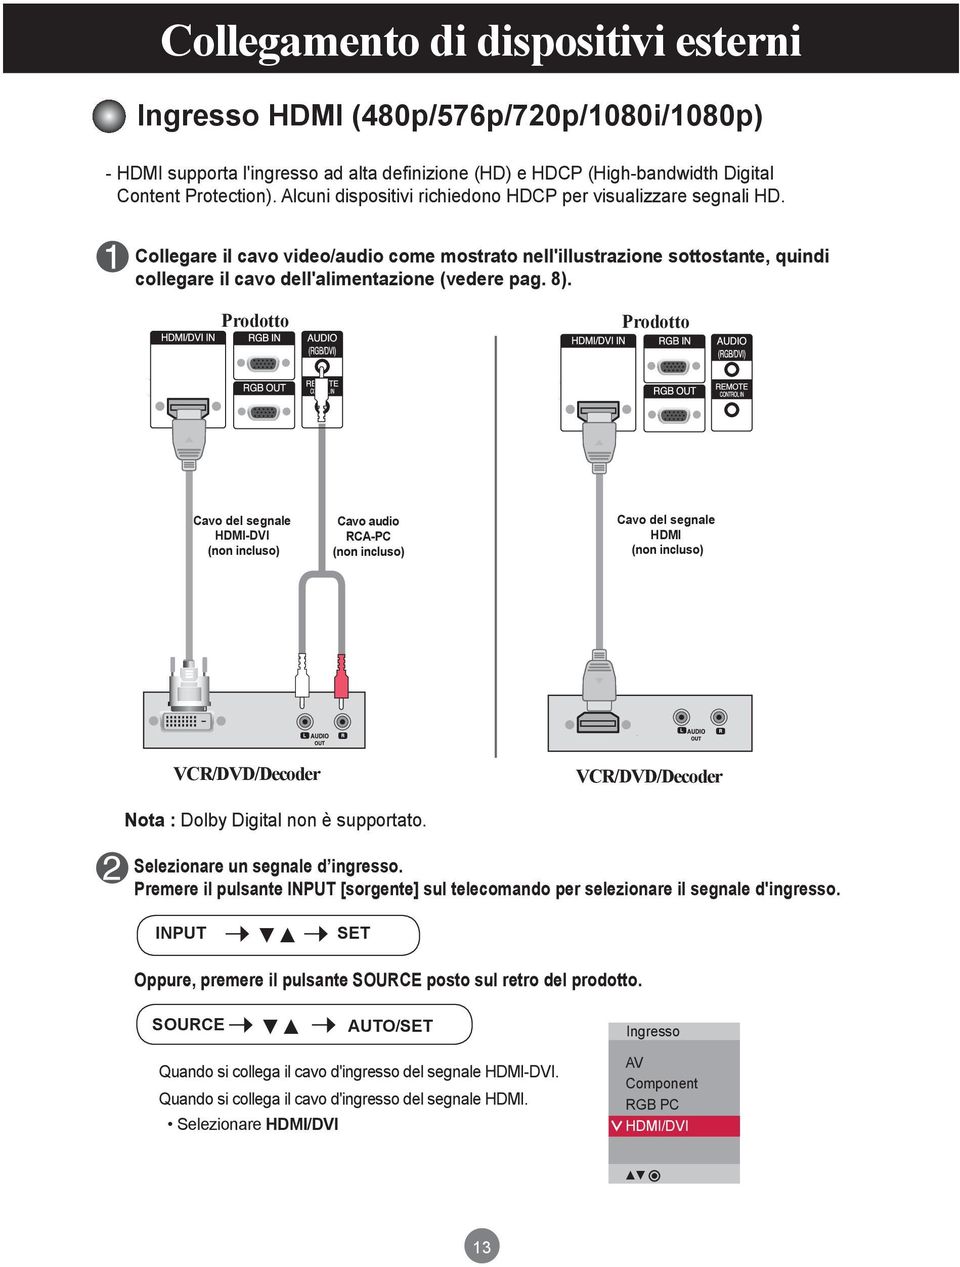 Prodotto Prodotto Cavo del segnale HDMI-DVI (non incluso) Cavo audio RCA-PC (non incluso) Cavo del segnale HDMI (non incluso) VCR/DVD/Decoder VCR/DVD/Decoder Nota : Dolby Digital non è supportato.